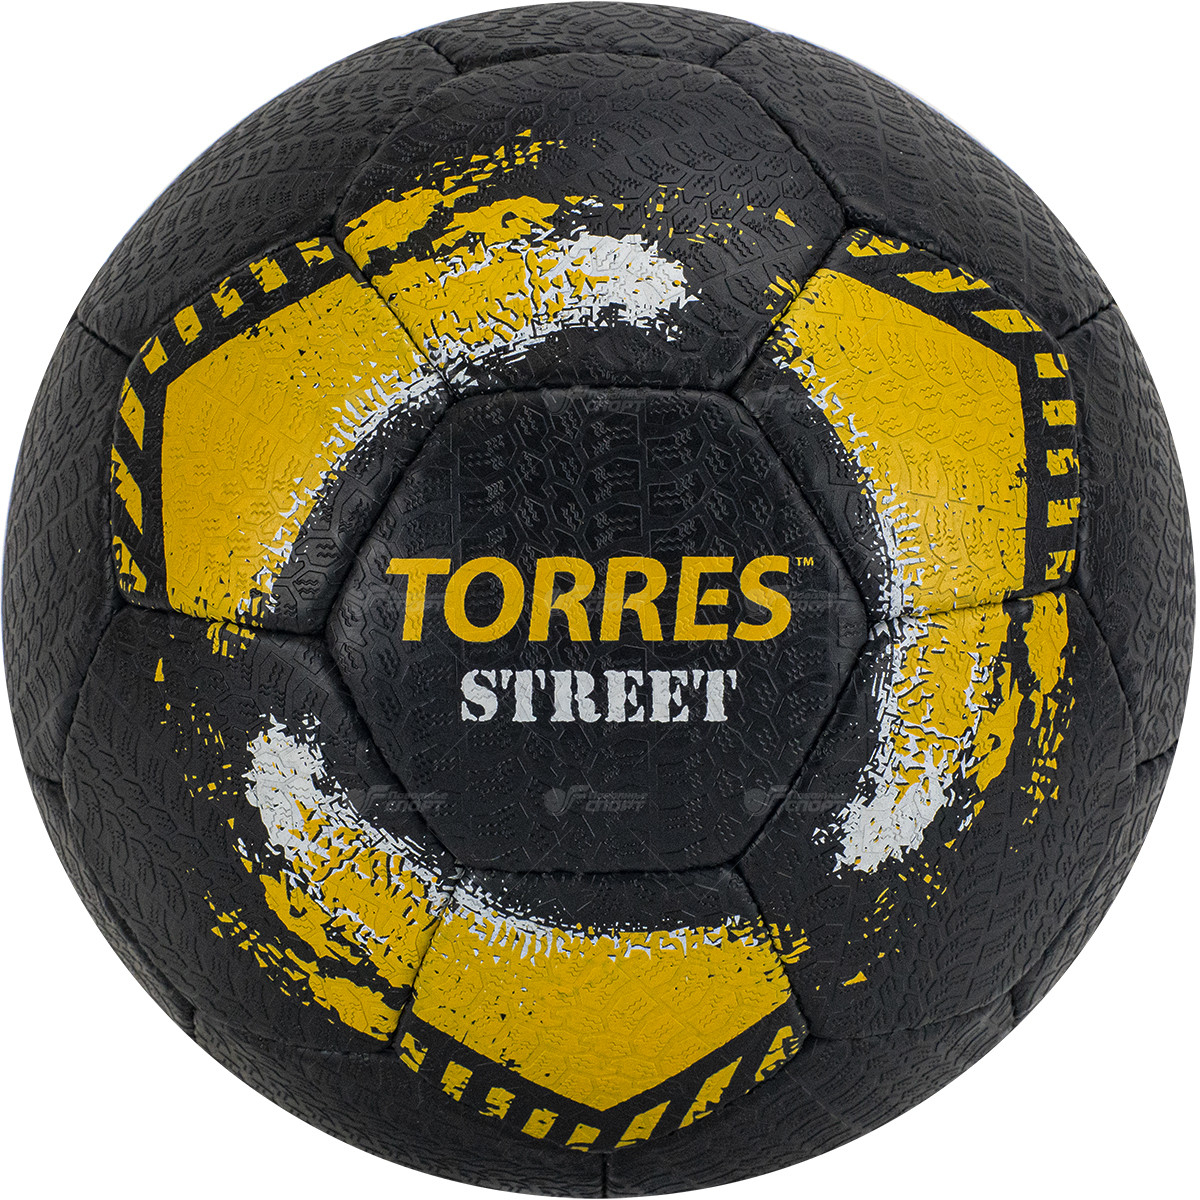 Мяч ф/б Torres Street арт.F020225 р.5 (NEW)